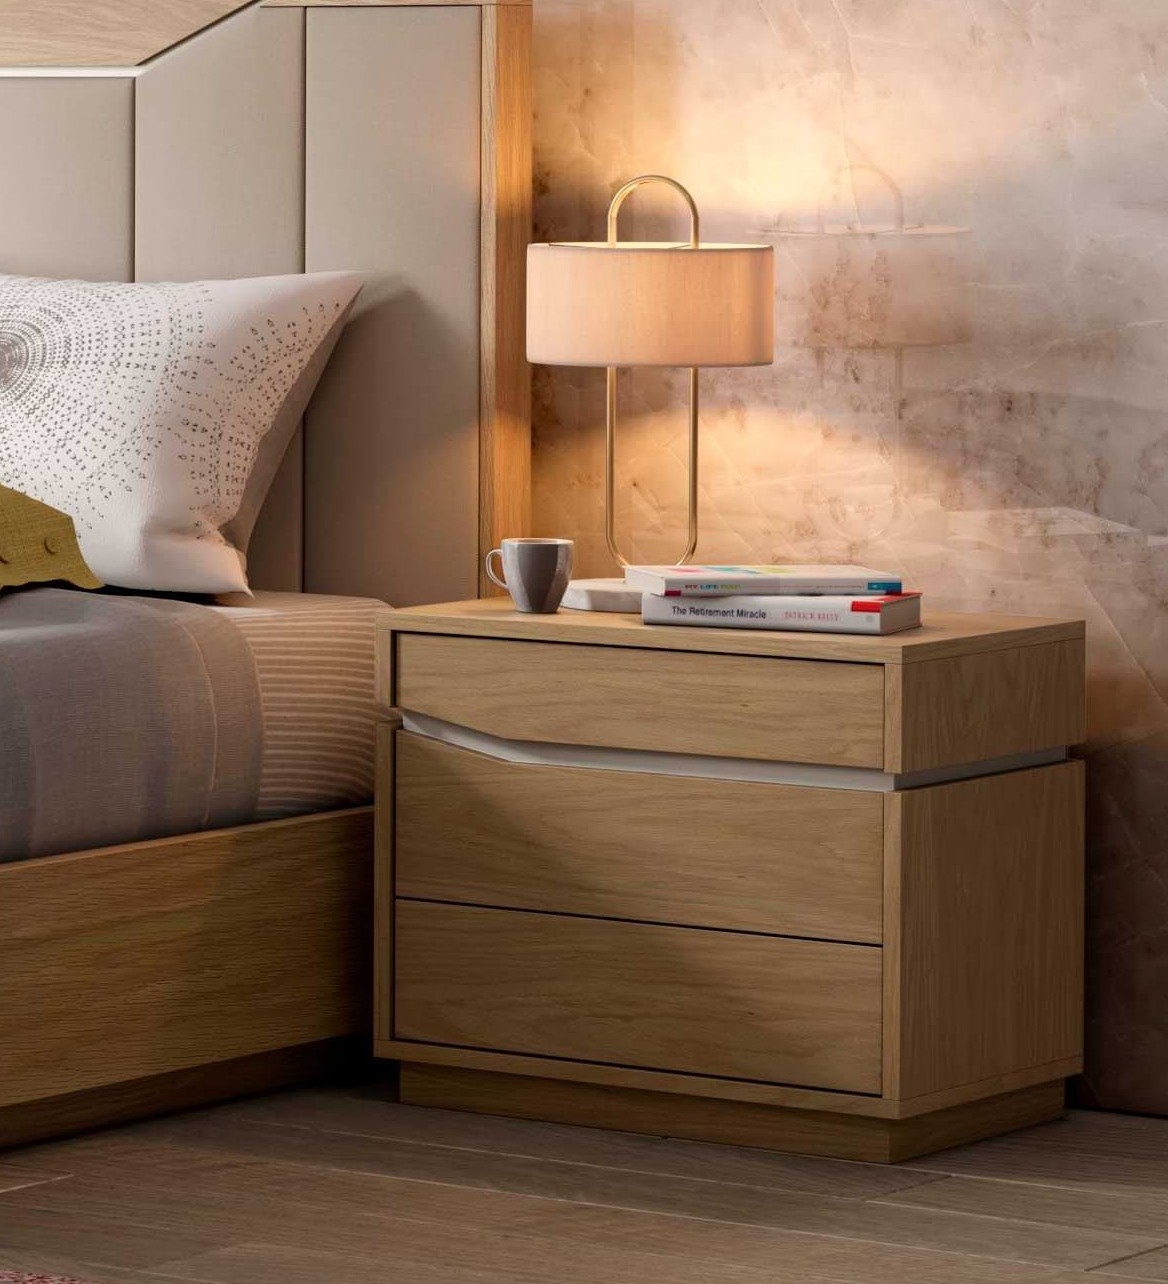 A cama é o centro do quarto, mas os detalhes fazem a diferença. Esta mesa de cabeceira Luca Mor ajuda a tornar o espaço aconchegante e convidativo.